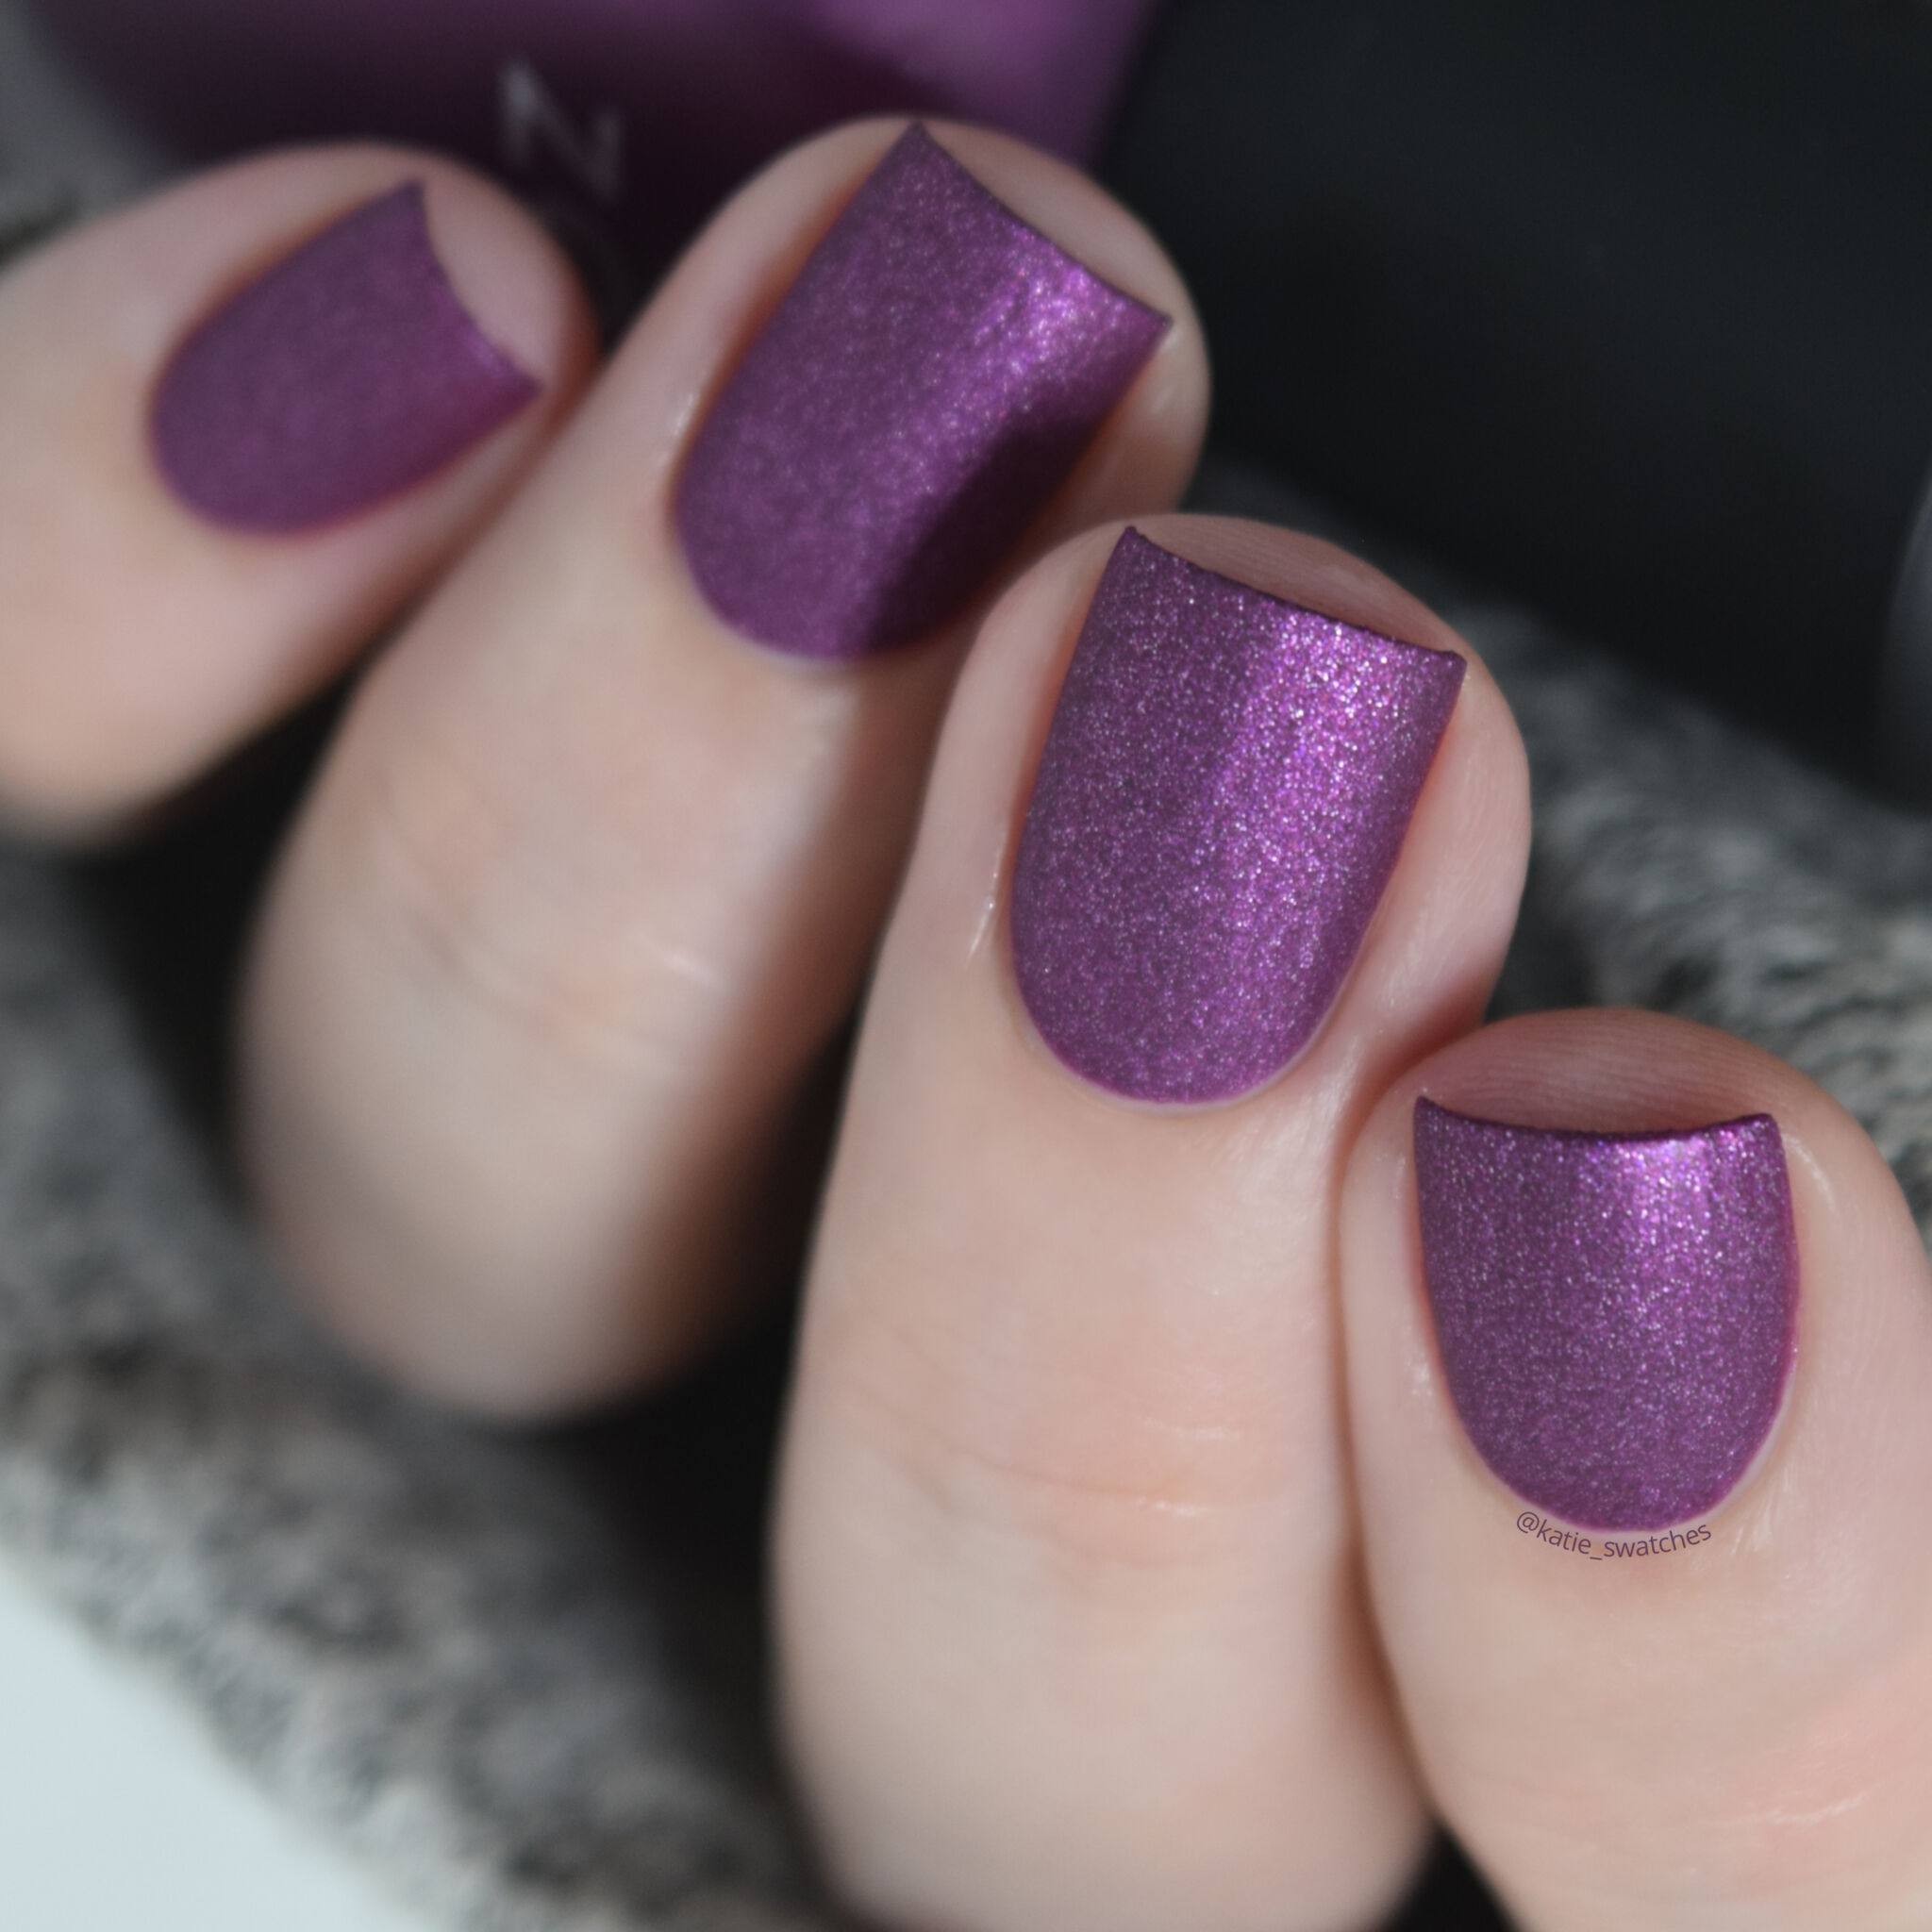 Zoya - Harlow MatteVelvet purple matte nail polish swatch - Winter 2009 MatteVelvet Collection